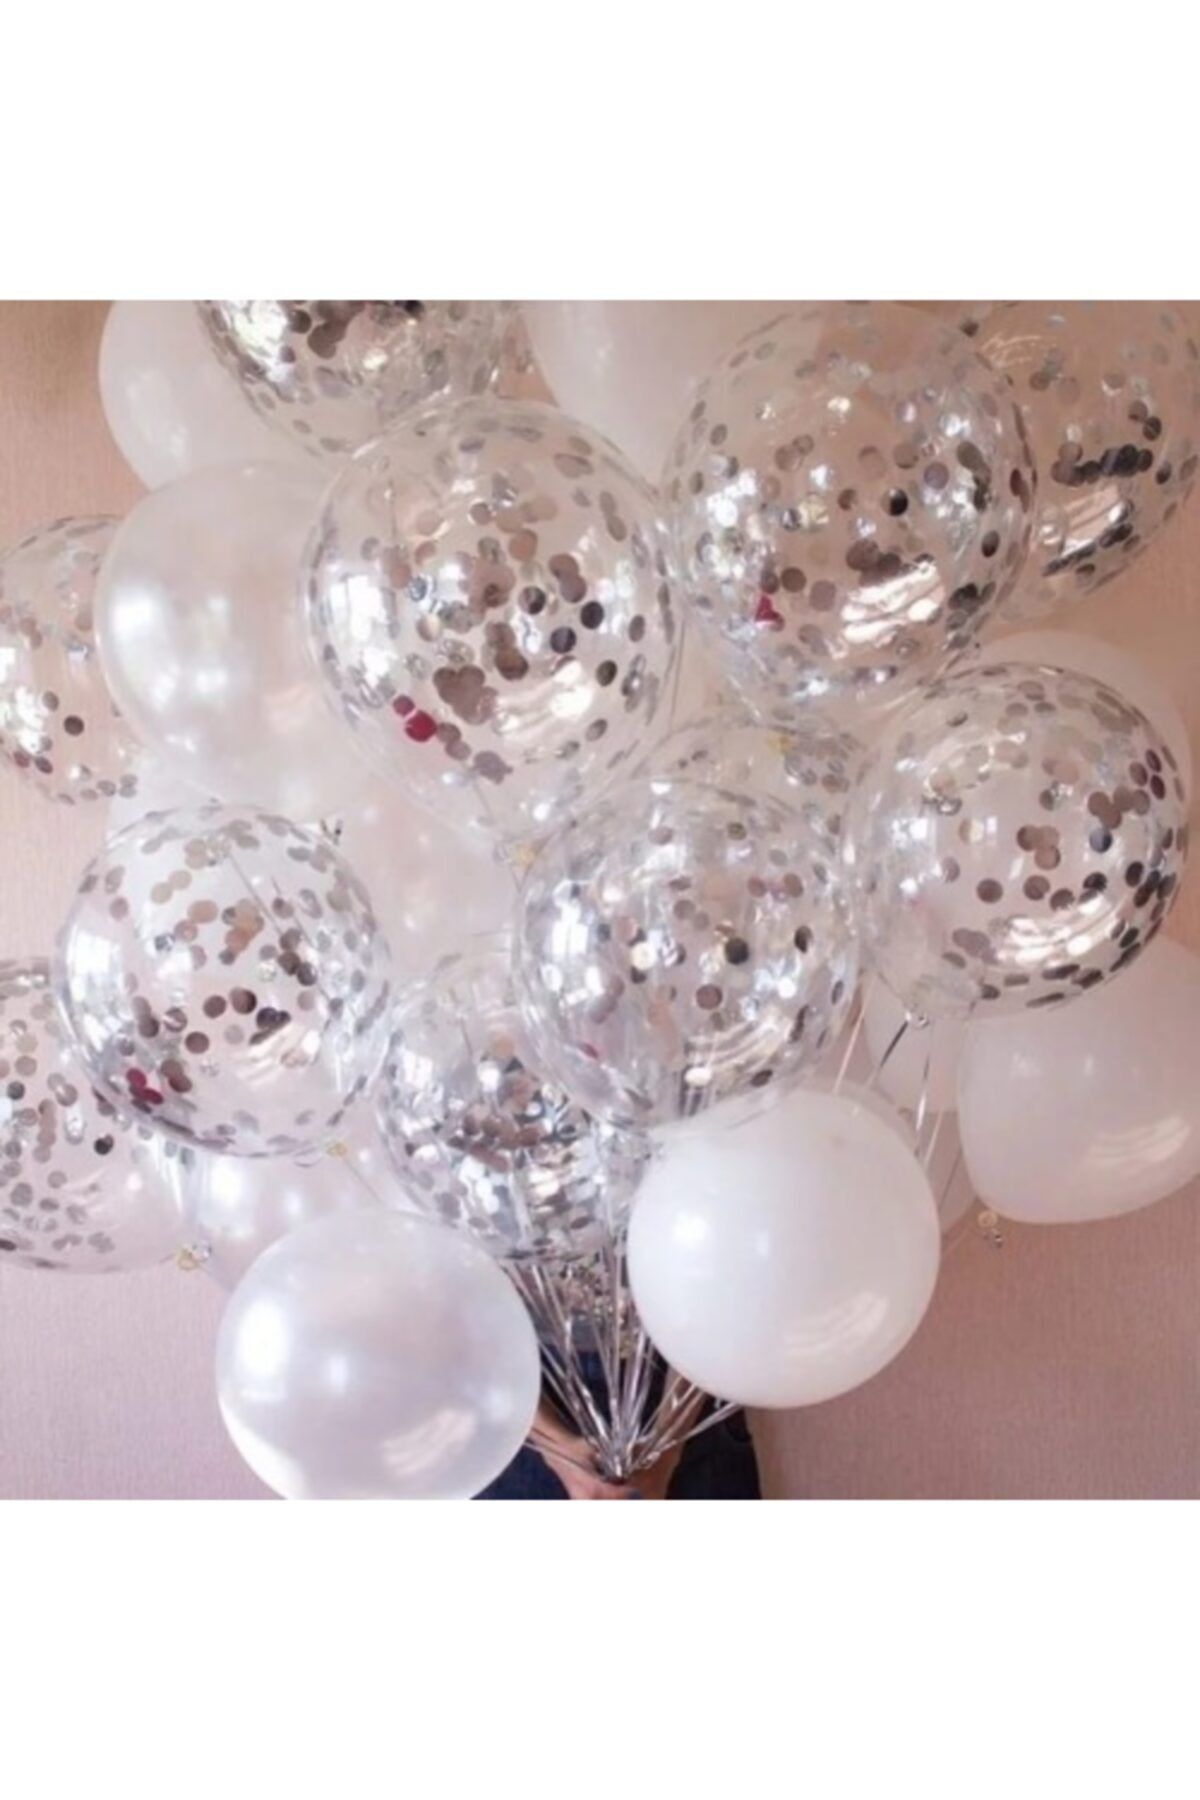 Deniz Party Store Gümüş Konfetili Şeffaf Balon Seti 20 Adet Balon